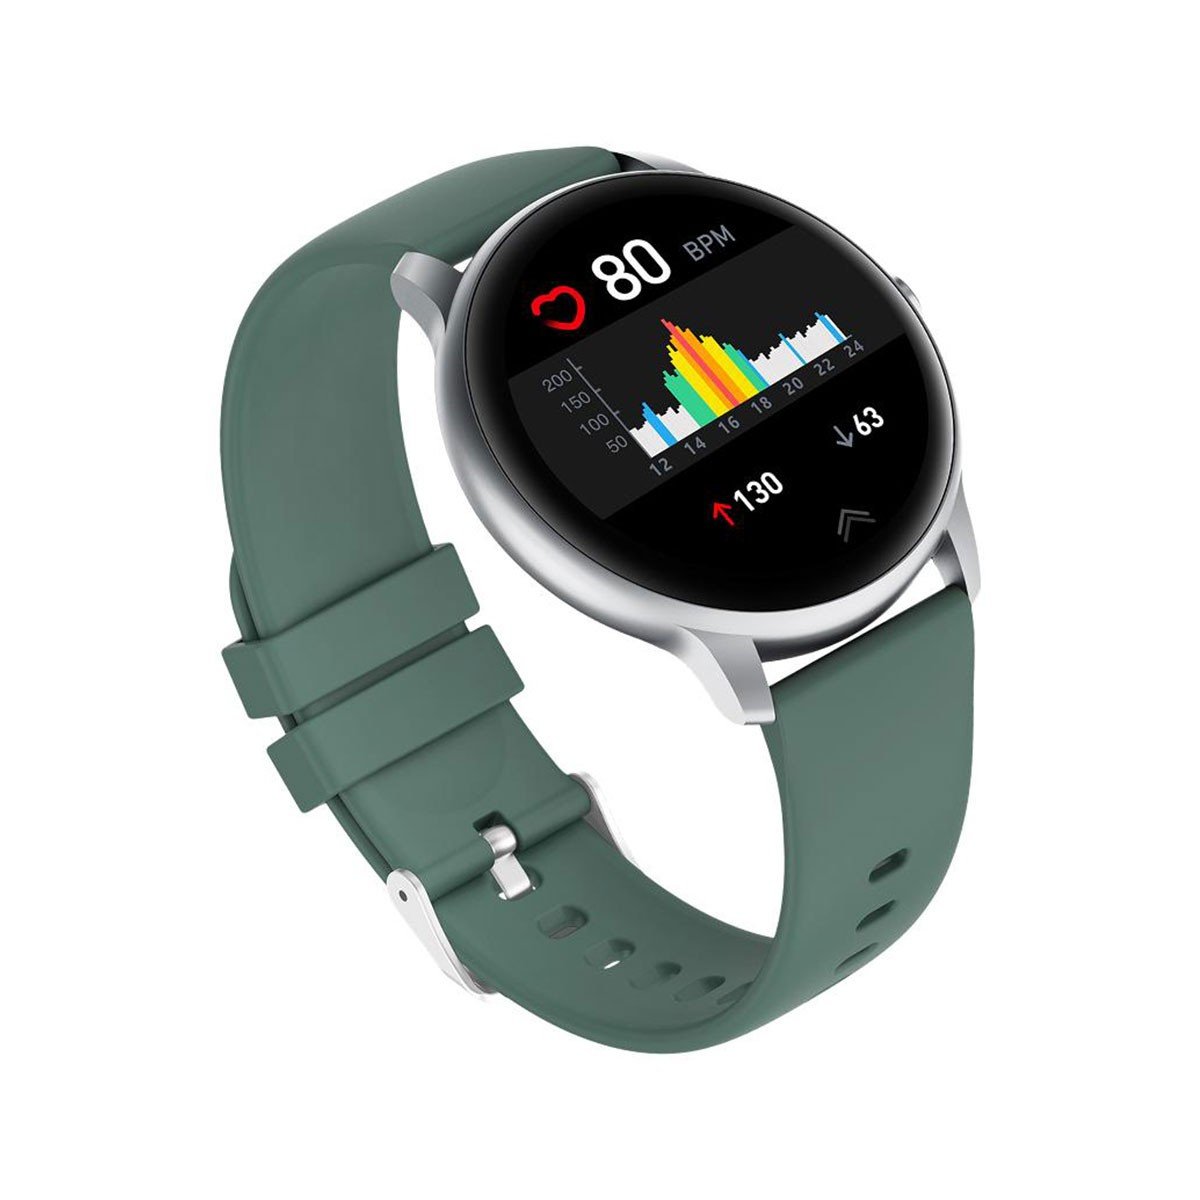 Reloj Inteligente Xiaomi Imilab Imi Kw66 Smartwatch Español - Outtec  Argentina - Tienda Online